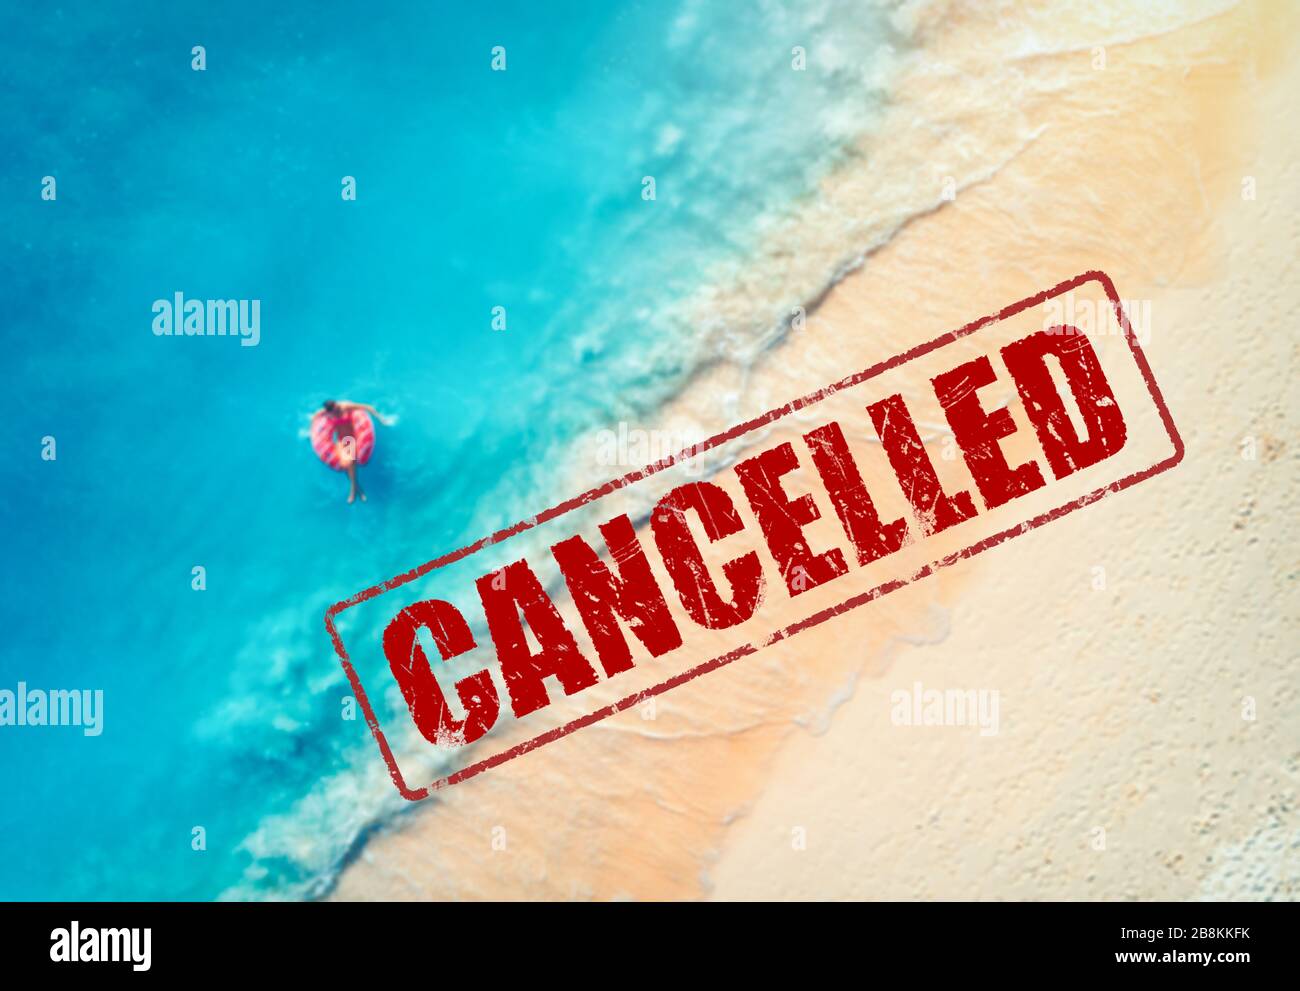 Viajes y vacaciones canceladas debido a la epidemia de coronavirus Foto de stock